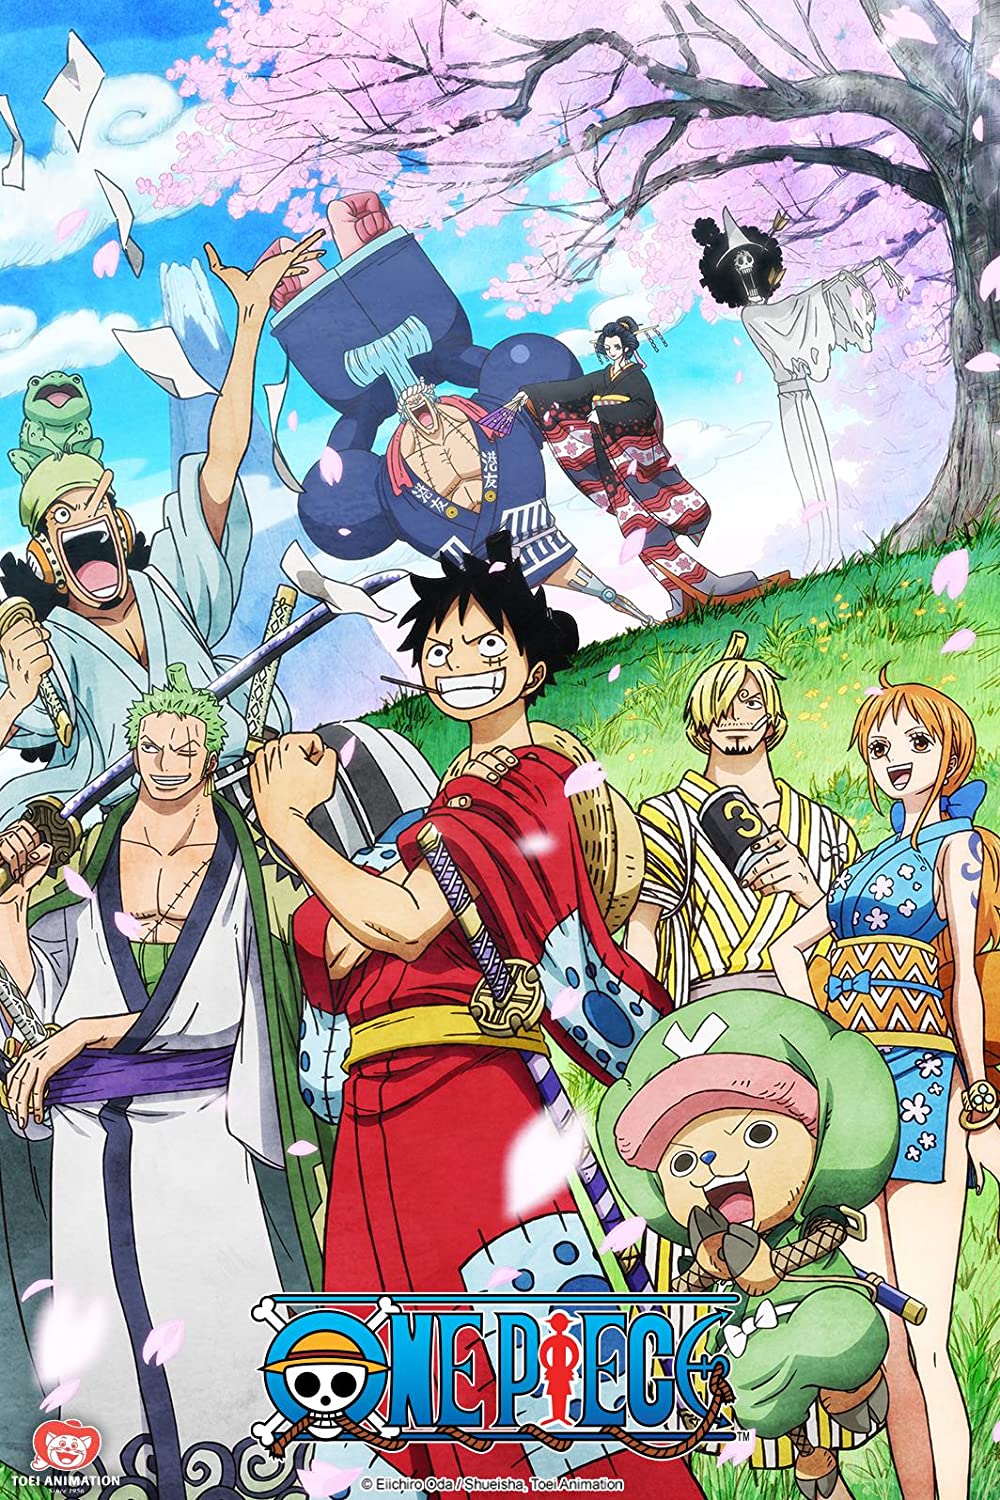 ดูหนังออนไลน์ฟรี One Piece Season 1 EP.19 วันพีช อิสท์บลู ซีซั่น 1  ตอนที่ 19